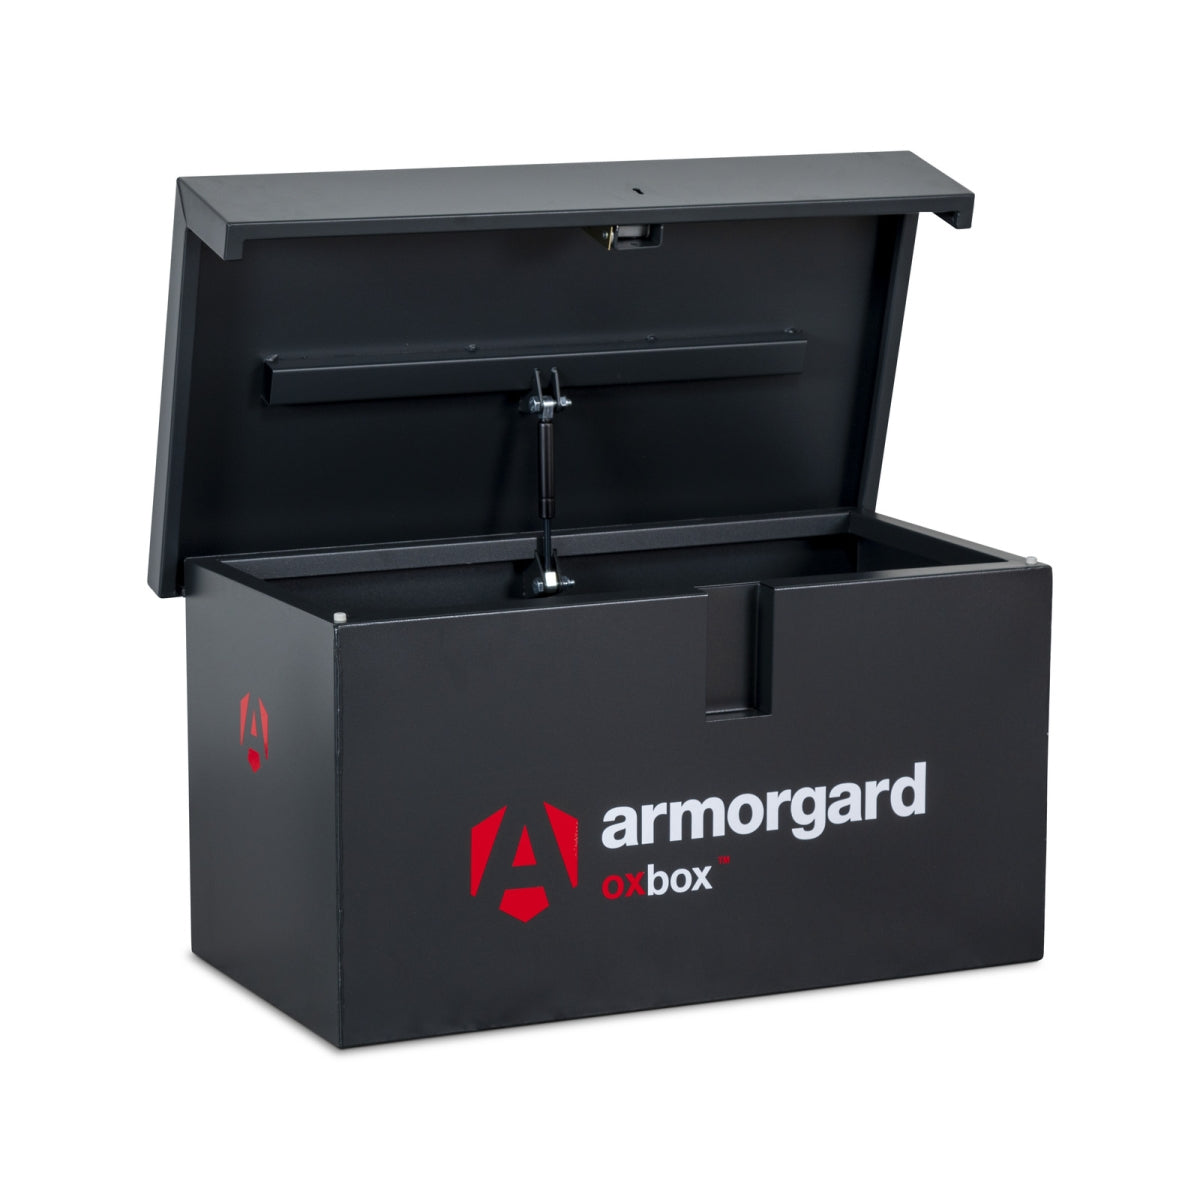 Armorgard Oxbox Van Box Ox05